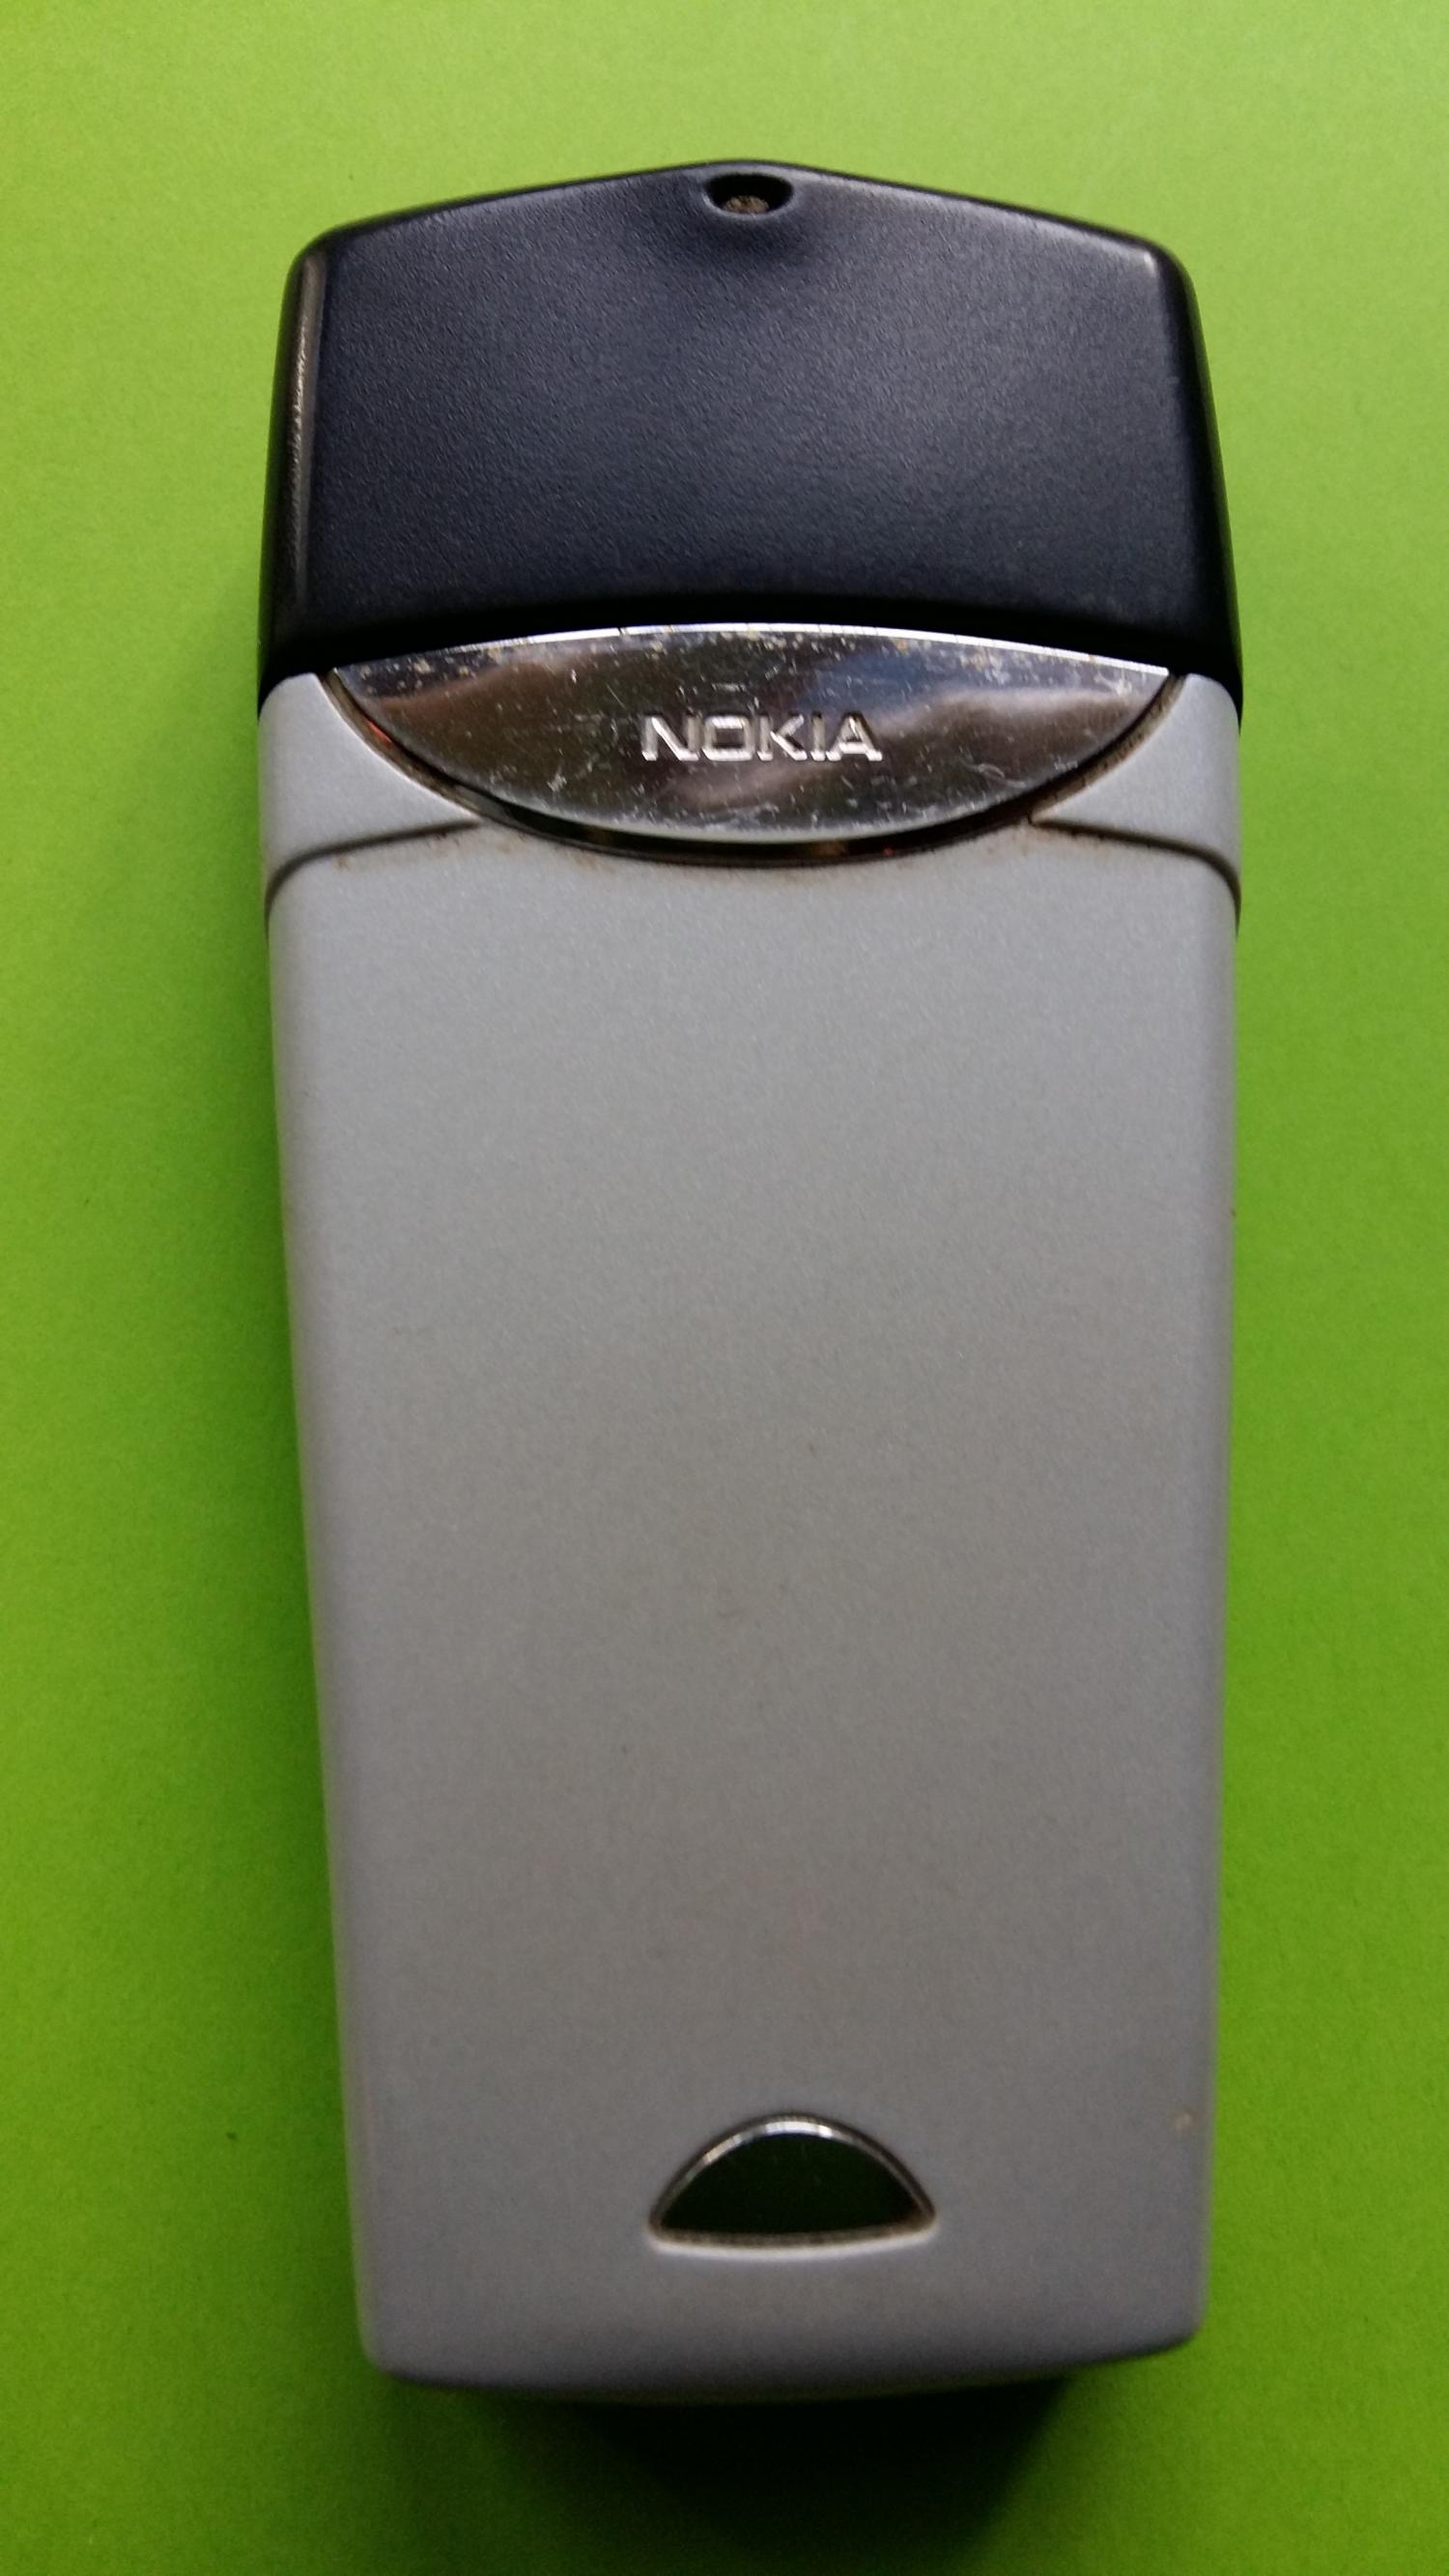 image-7324911-Nokia 8310 (9)2.jpg